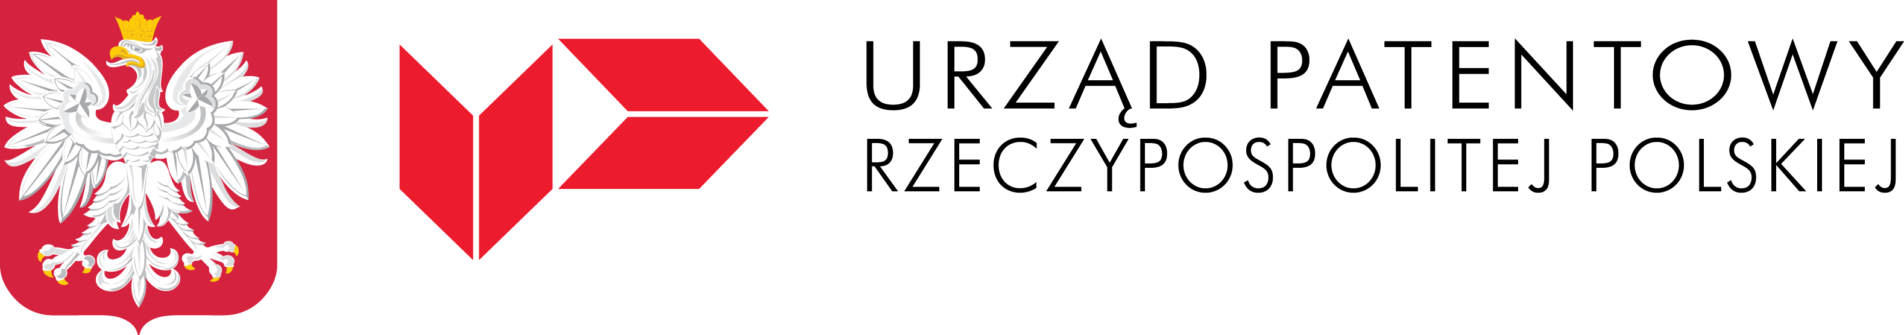 Grafika zawiera logotyp Urzędu Patentowego Rzeczypospolitej Polskiej, czarny napis na białym tle, po lewej stronie biały orzeł w kornie na czerwonym tle oraz czerwone logo